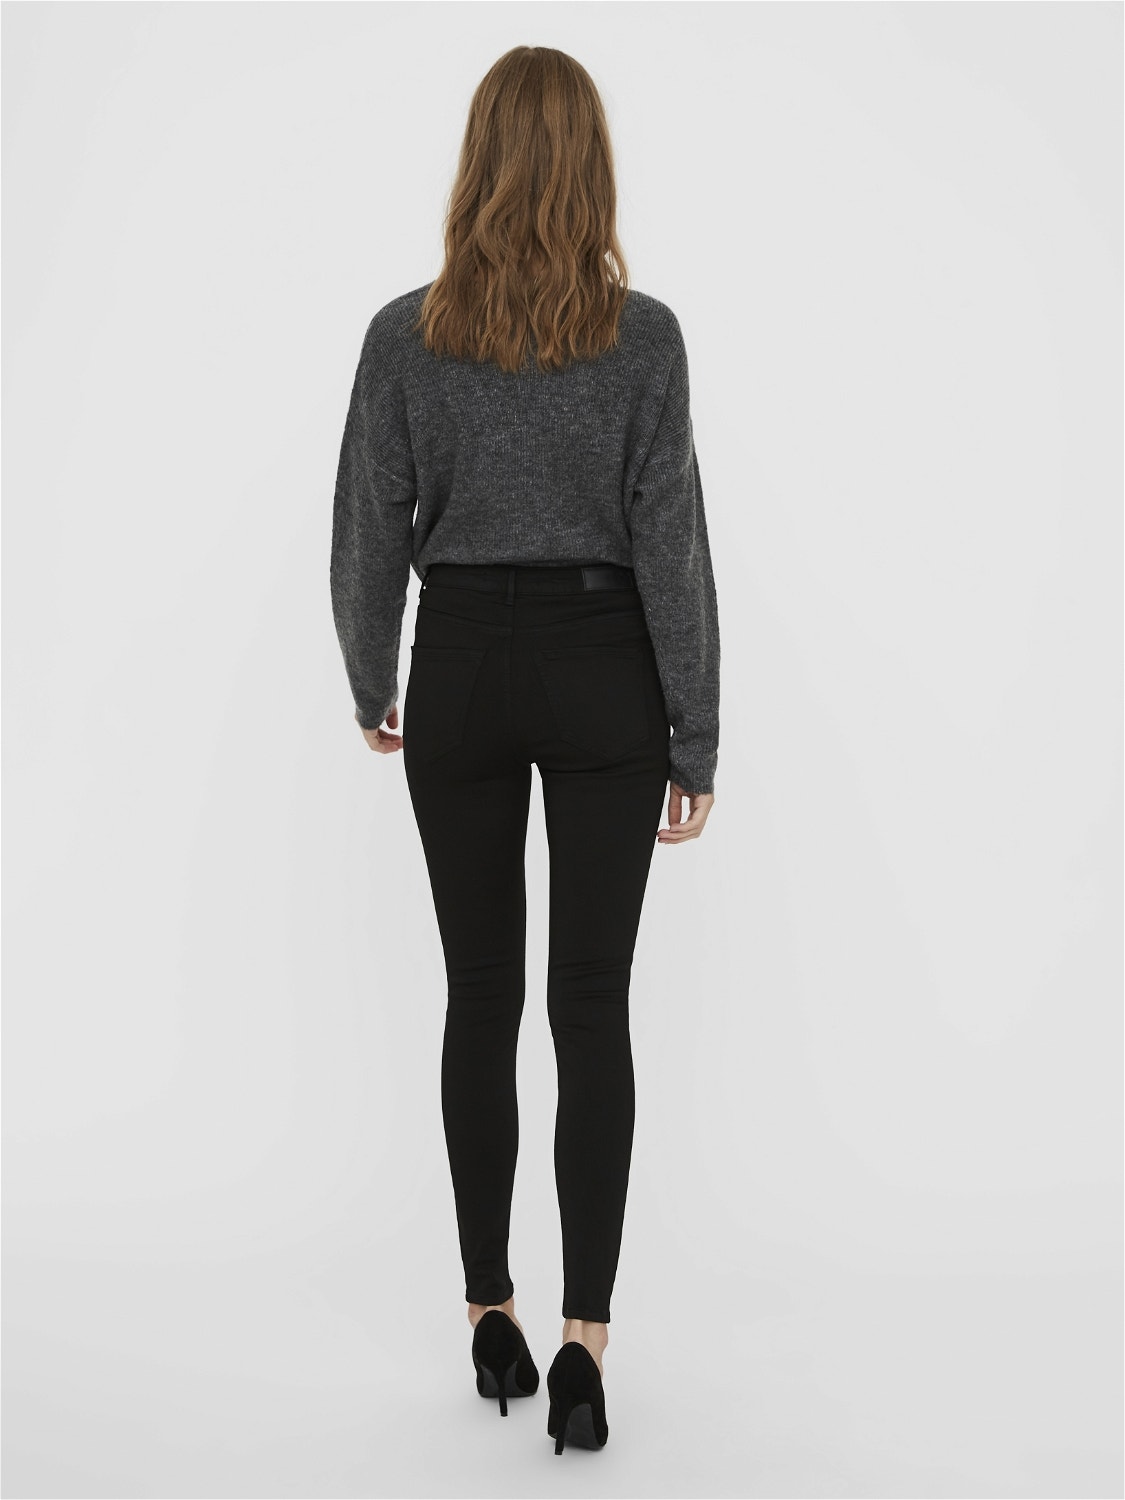 Vero Moda VMSOPHIA High rise Skinny fit Jeans -Black - 10198520